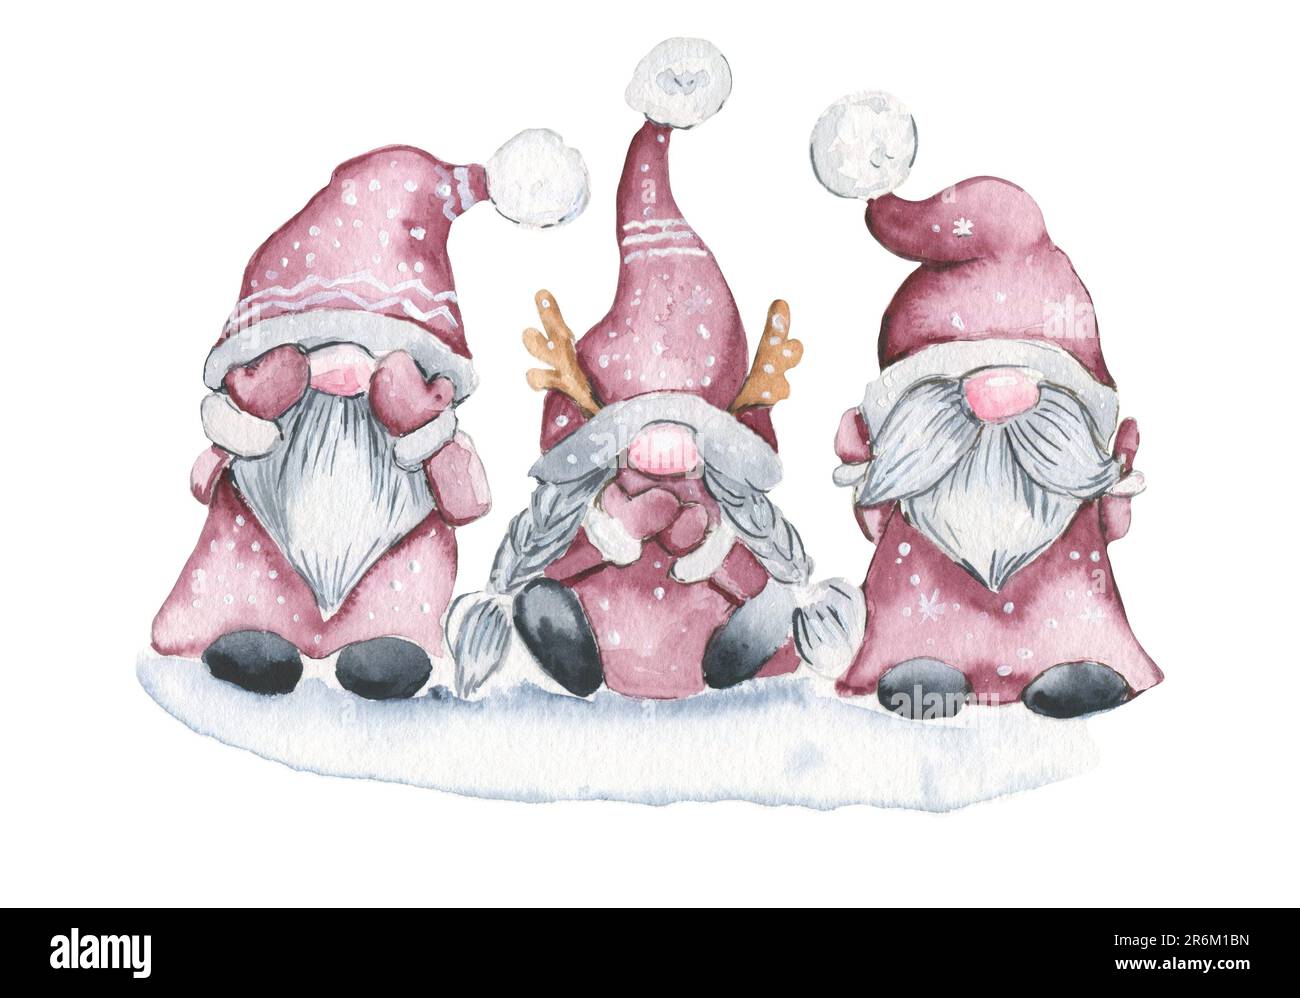 Aquarell drei Zwerge zu Weihnachten. Handgezeichnete Aquarell-Illustration. Winterurlaub. Nichts sehen, nichts hören, nichts sagen. Stockfoto